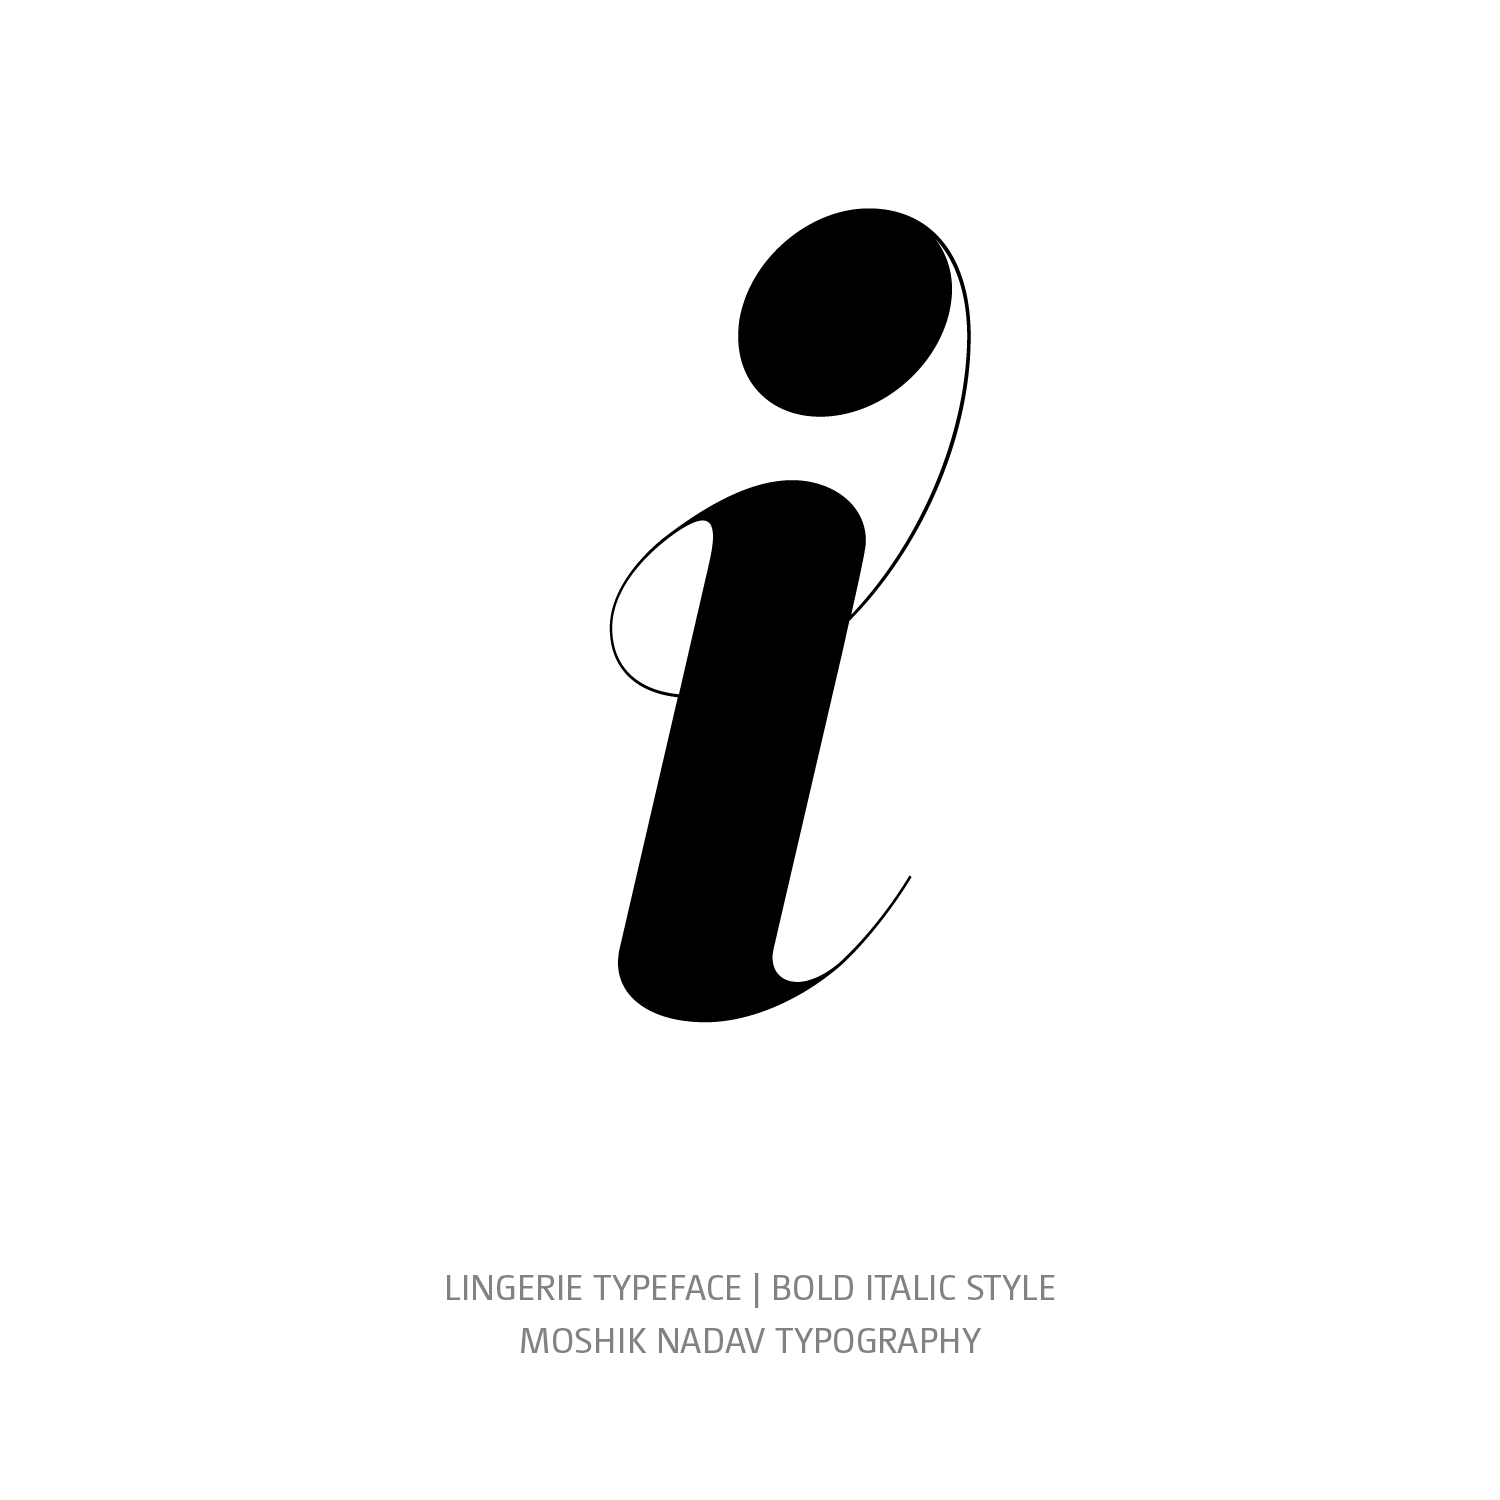 Lingerie Typeface Bold Italic i